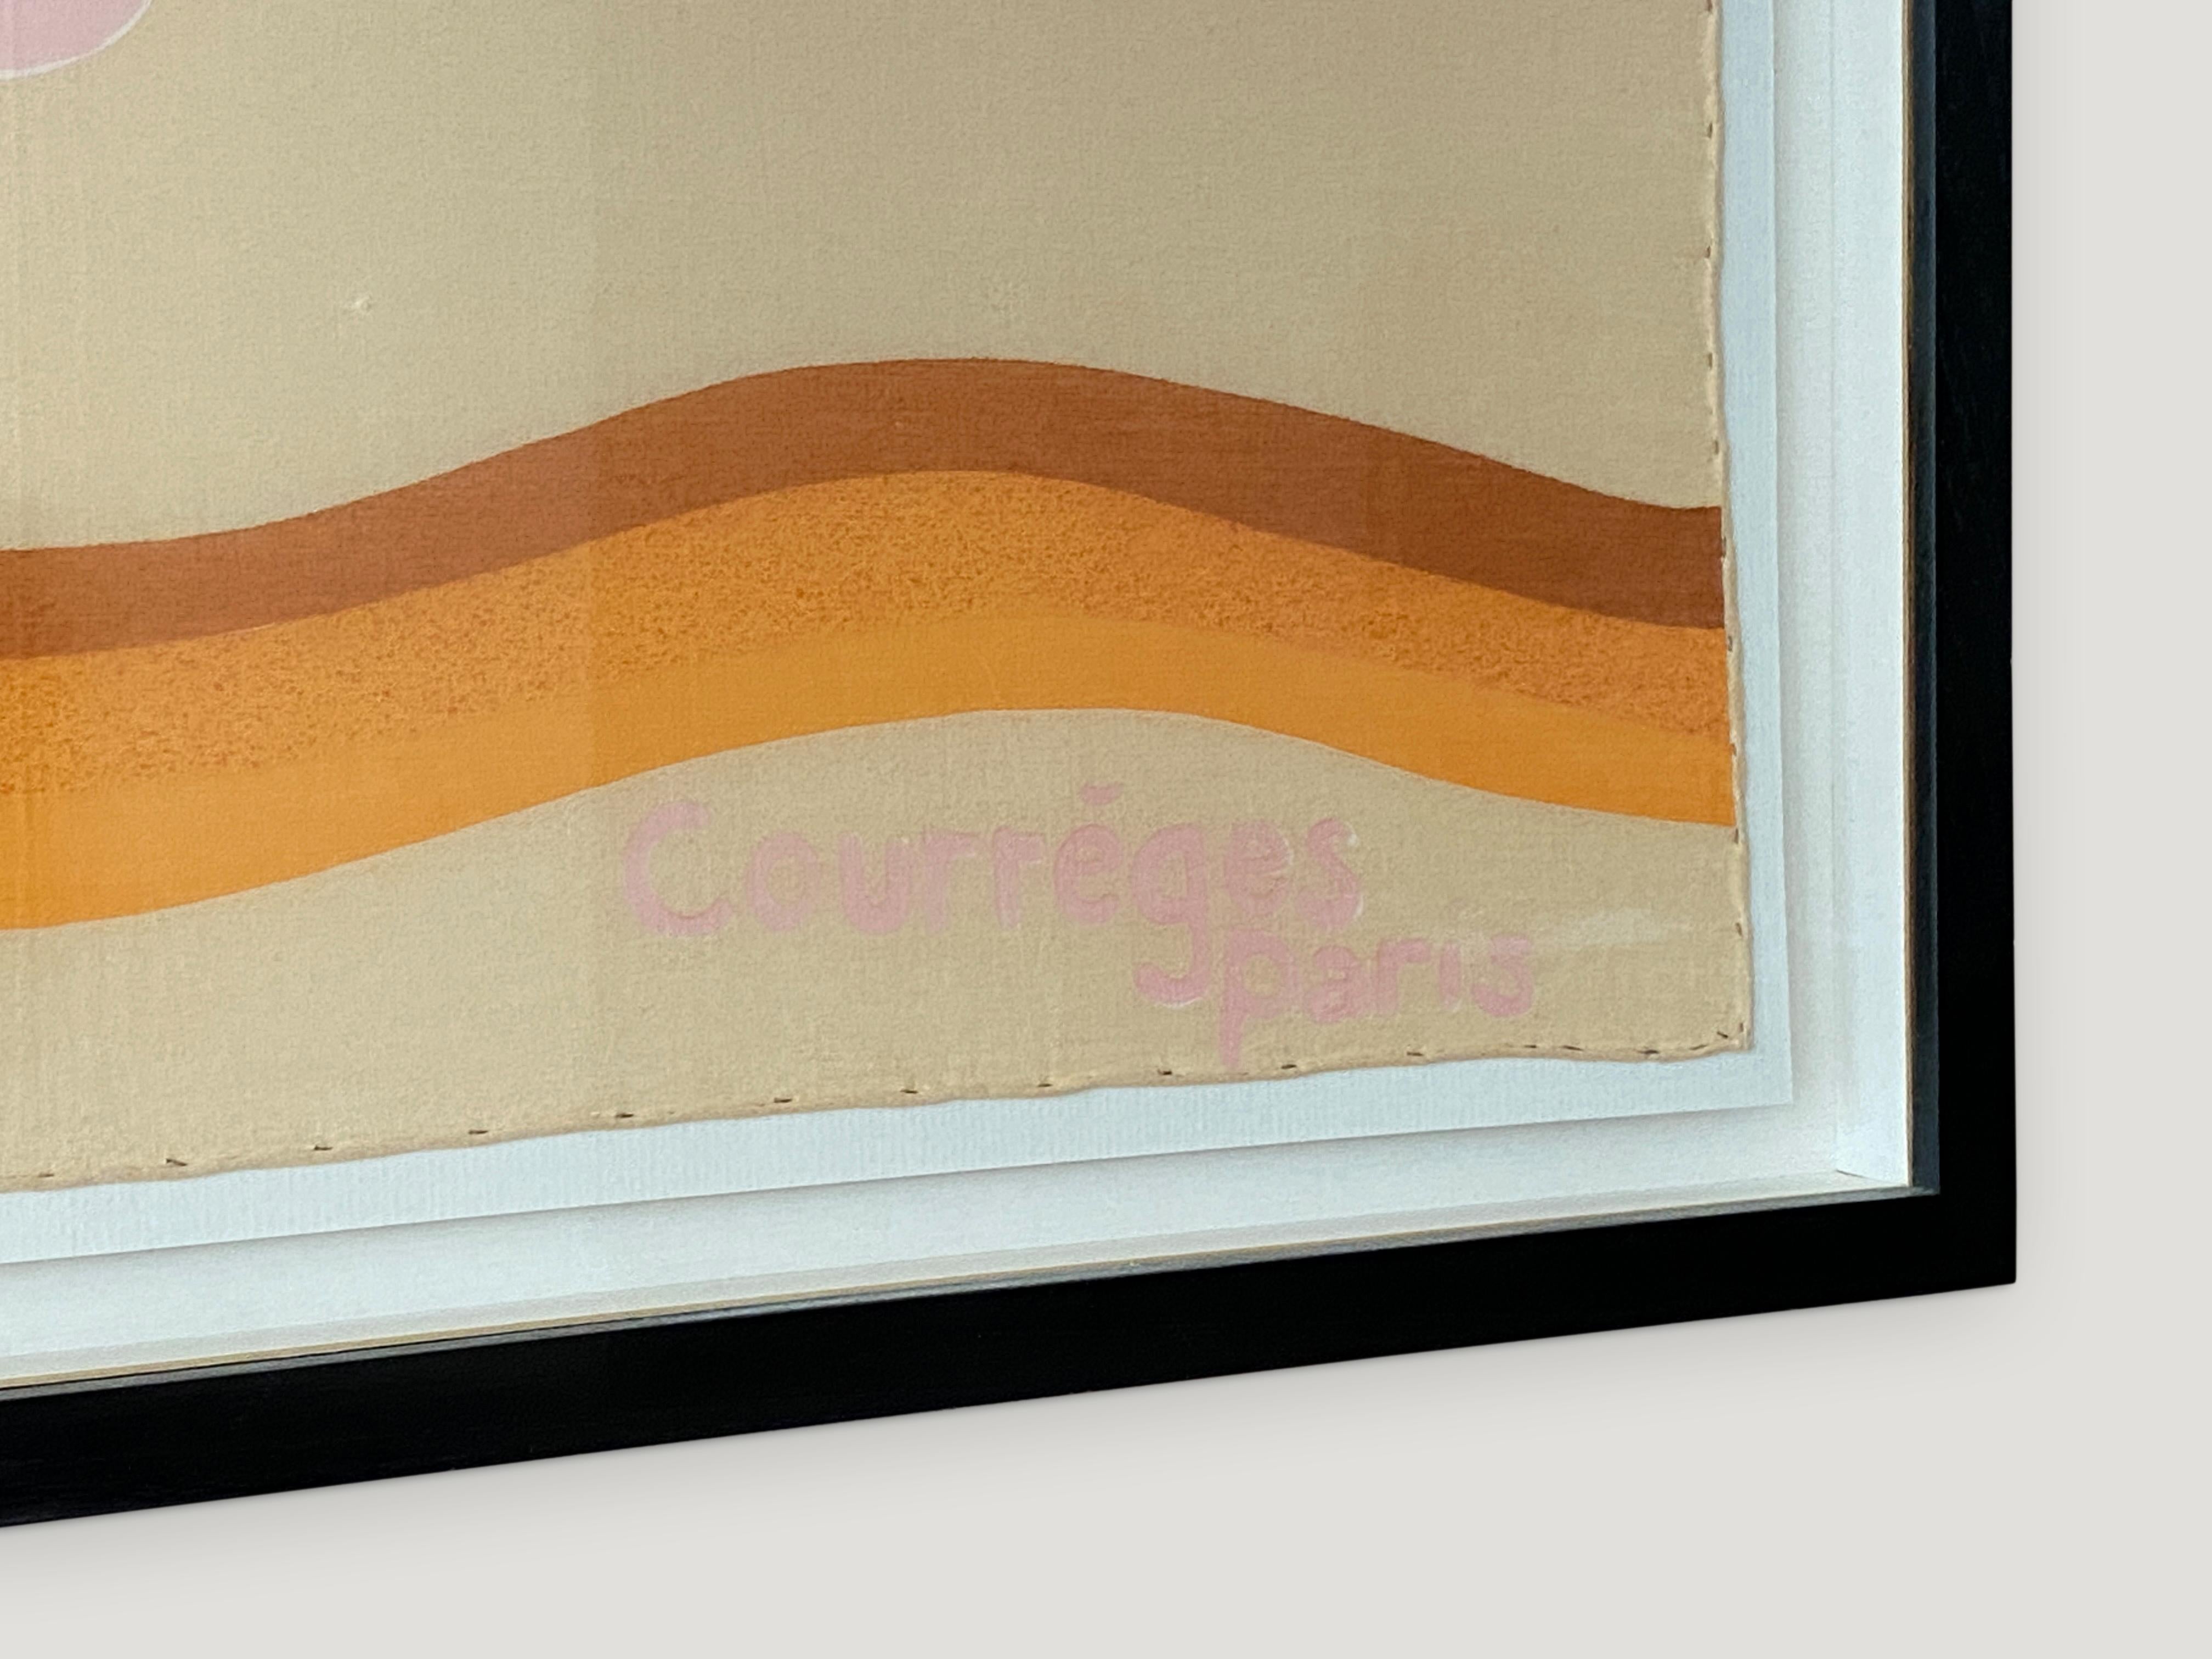 Seltener, sehr gut erhaltener Seidenschal von Courrèges, gefunden in Paris, Frankreich. Mit kräftigen Farben und Formen im Pop-Art-Stil und dem Courrèges-Logo. Eingefasst in einen modernen Rahmen aus natürlichem Teakholz.

Andrianna Shamaris. Der